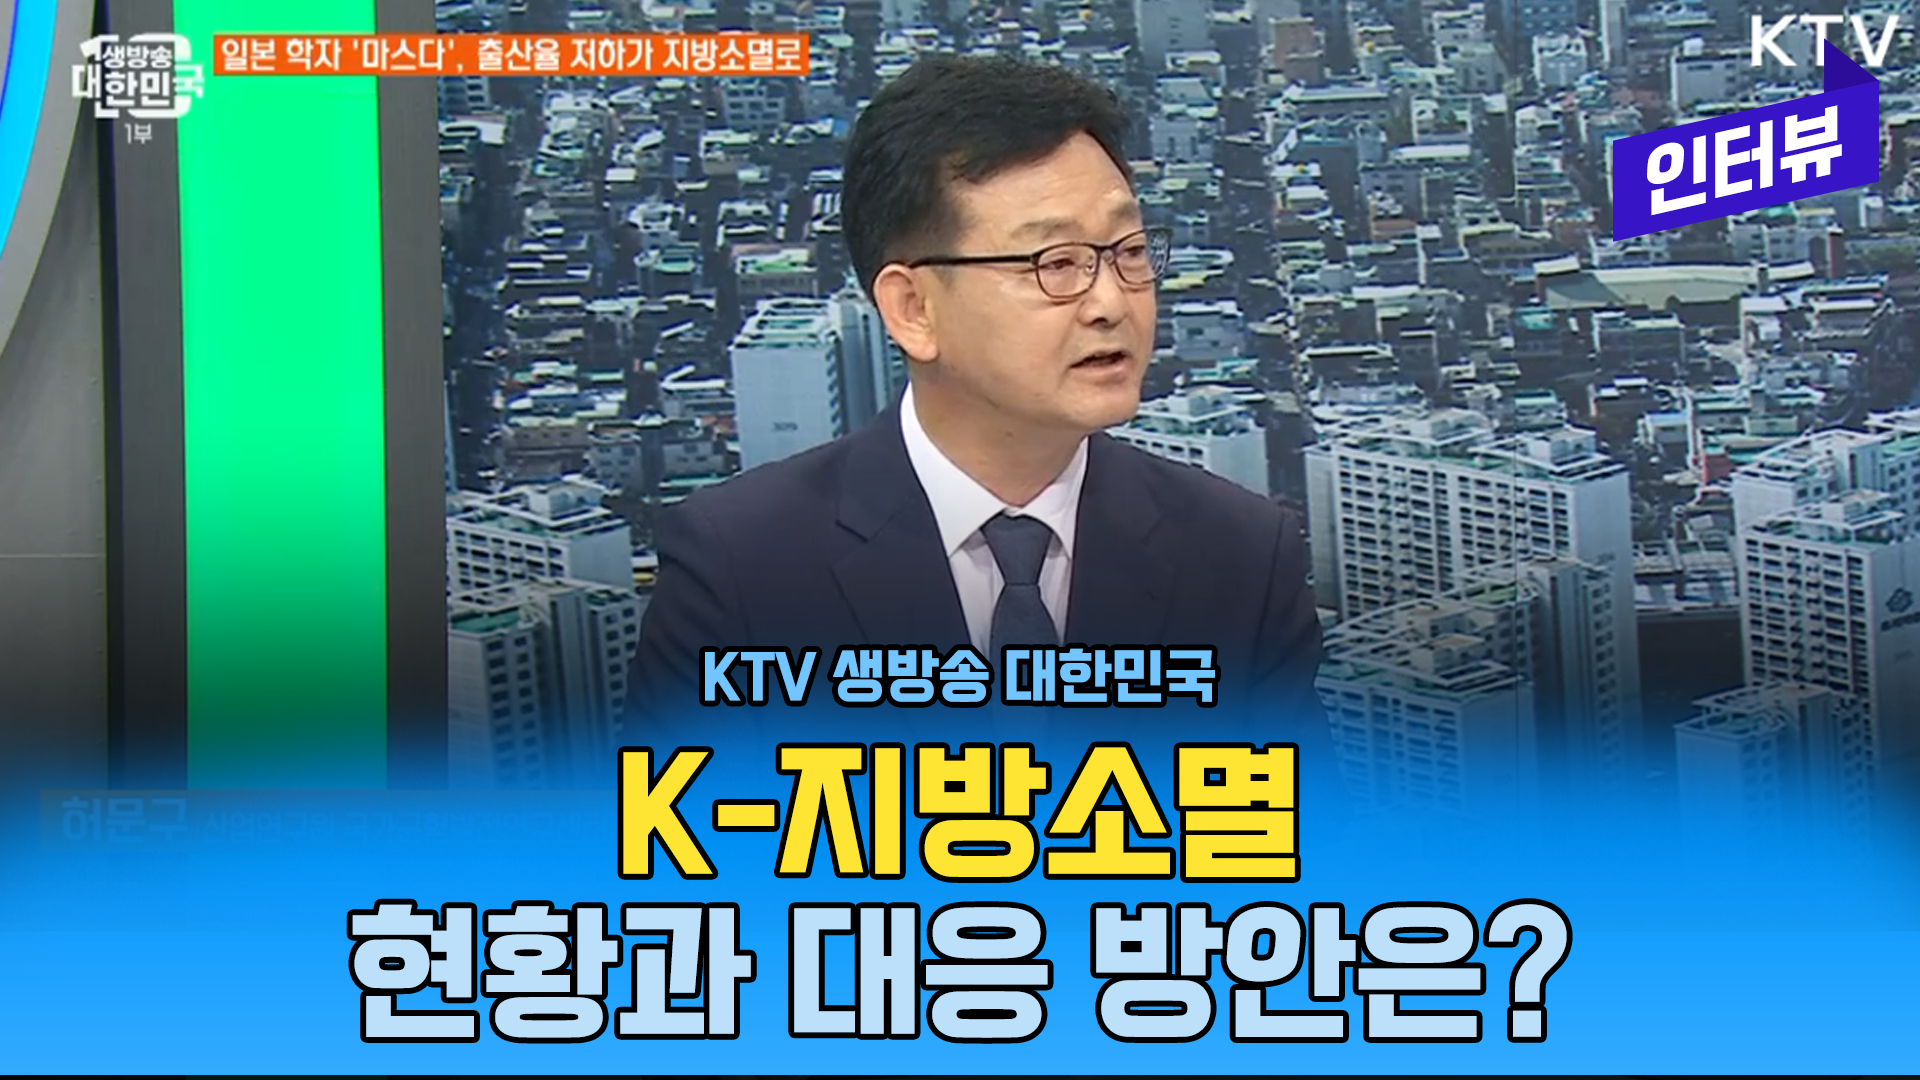 영상보고서_[KTV] 생방송 대한민국, K 지방소멸, 현황과 대응방안은?